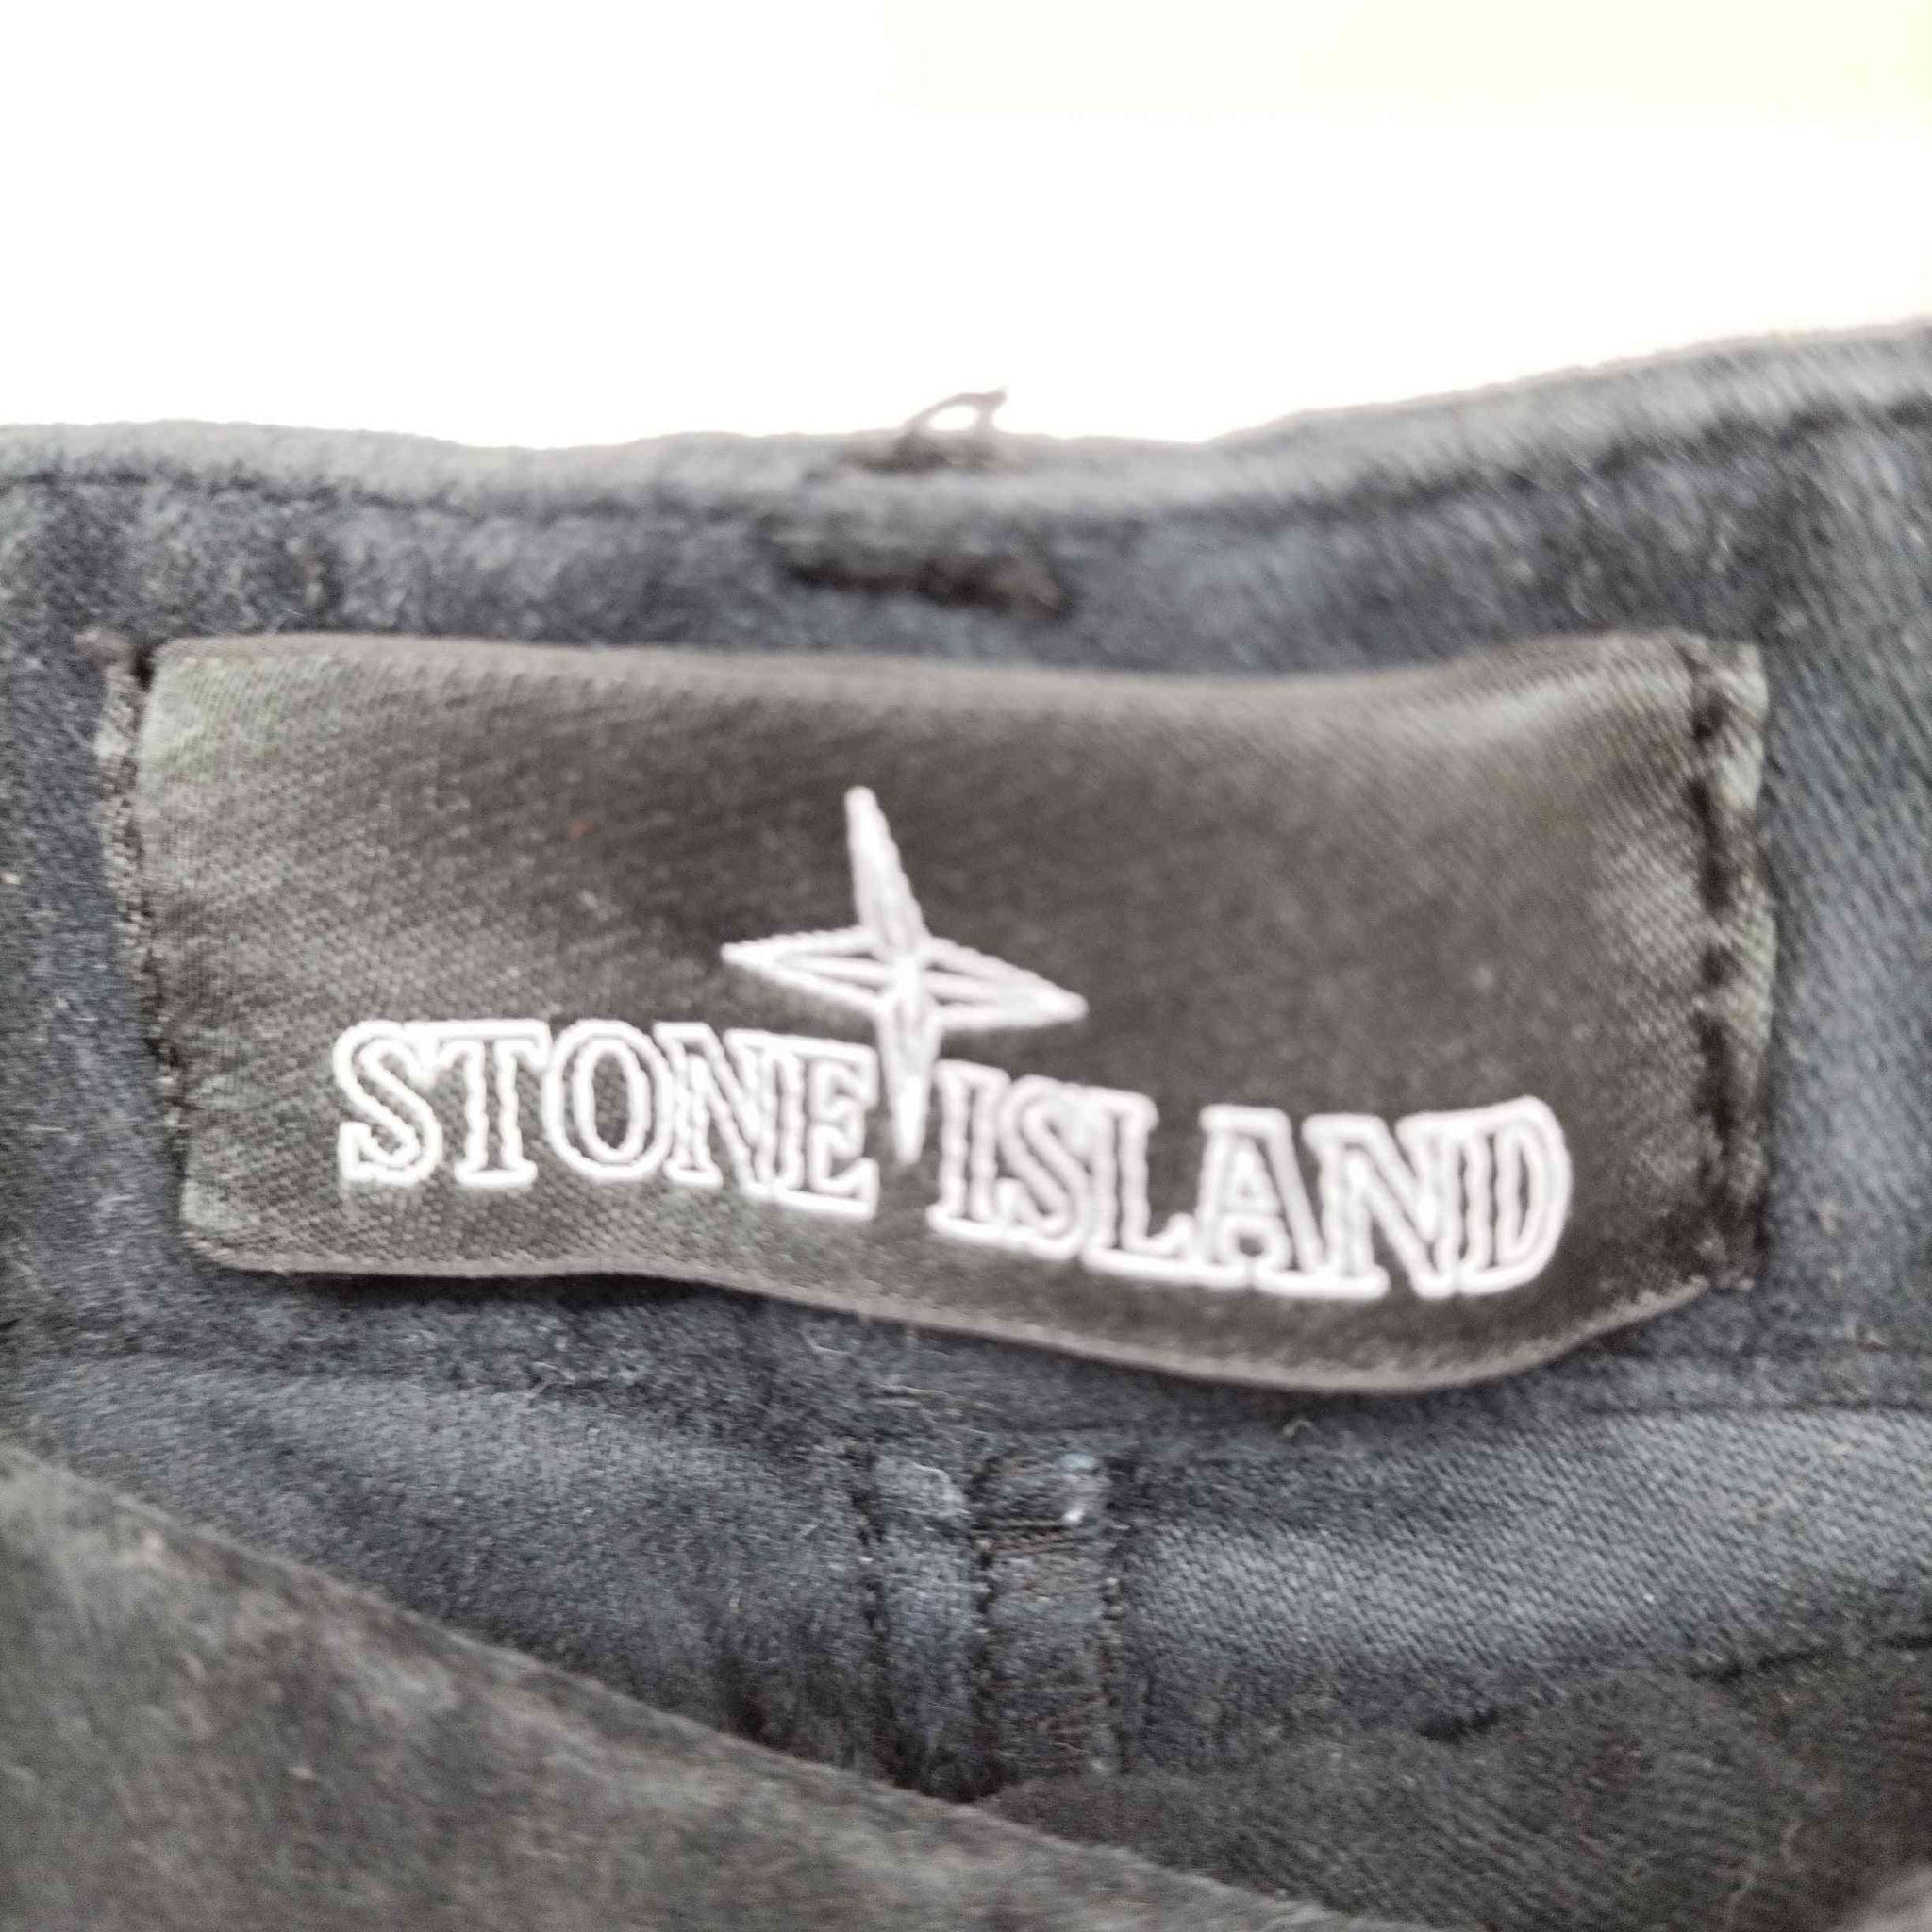 STONE ISLAND SHADOW PROJECT(ストーンアイランド シャドウプロジェクト)Mole Skin Cargo Pants モールスキン カーゴ トラウザー